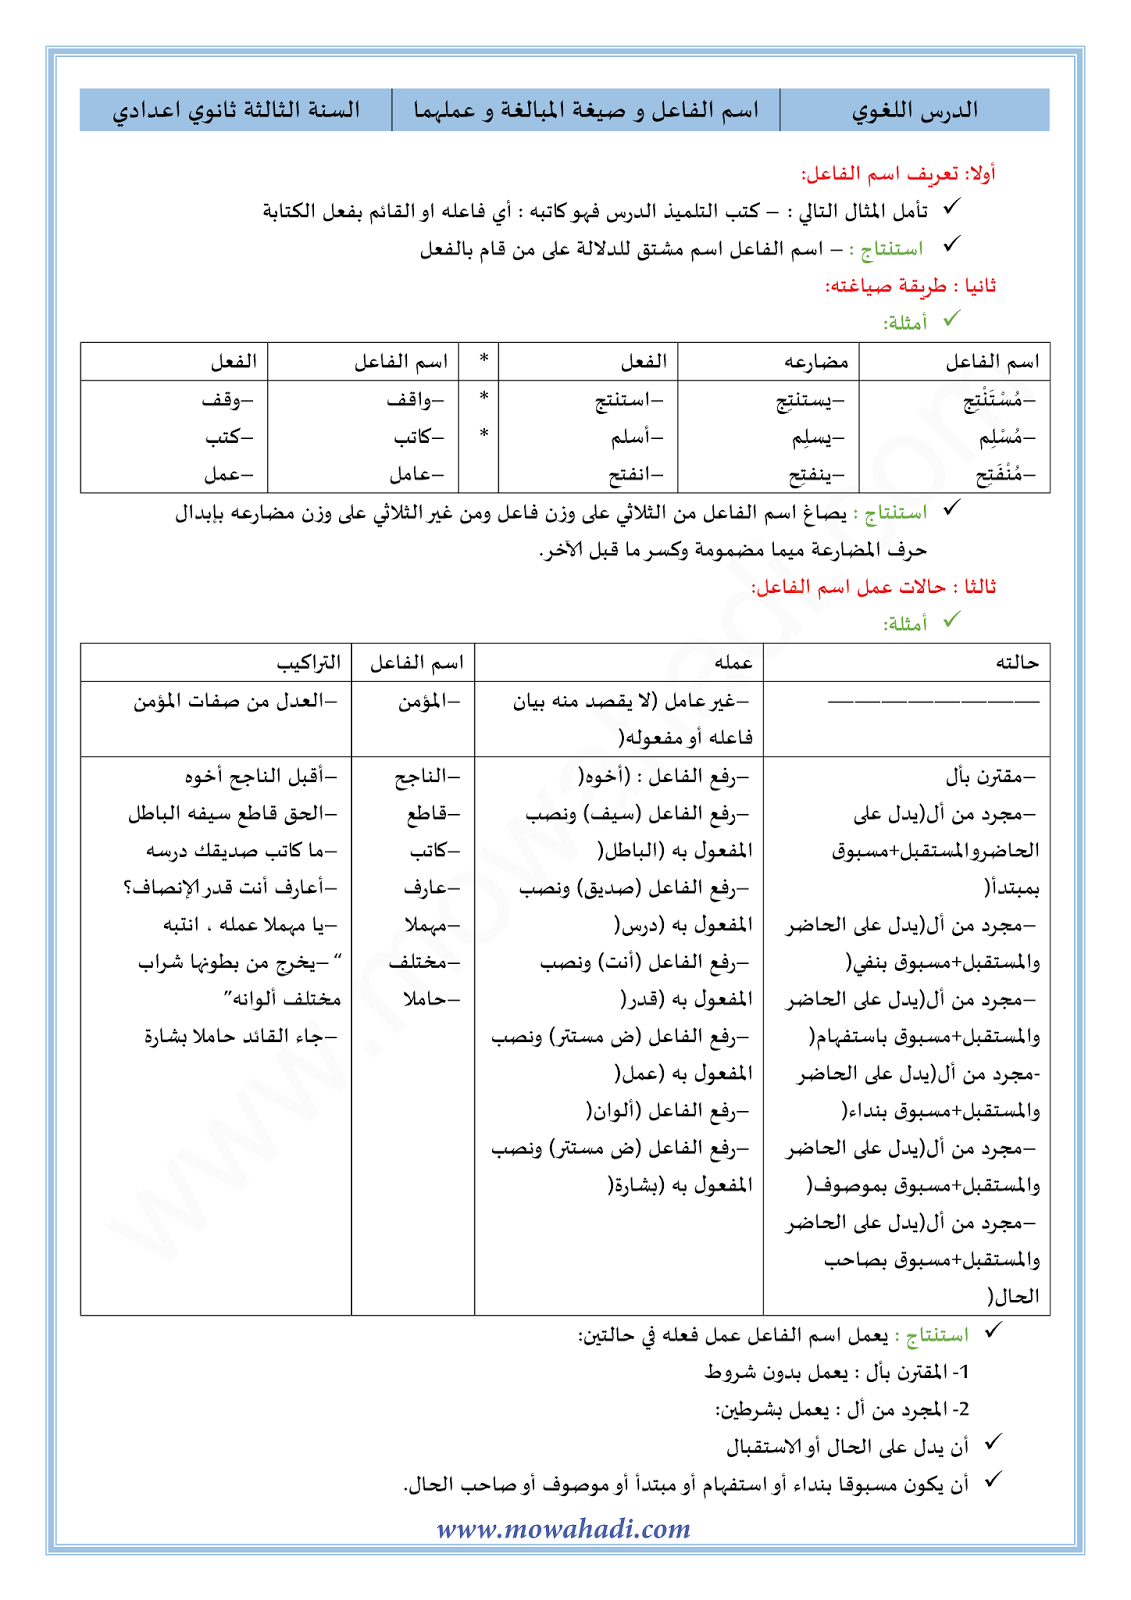 الدرس اللغوي الدرس اسم الفاعل و عمله ( صيغ المبالغة ) للسنة الثالثة اعدادي في مادة اللغة العربية 1-cours-dars-loghawi3_001